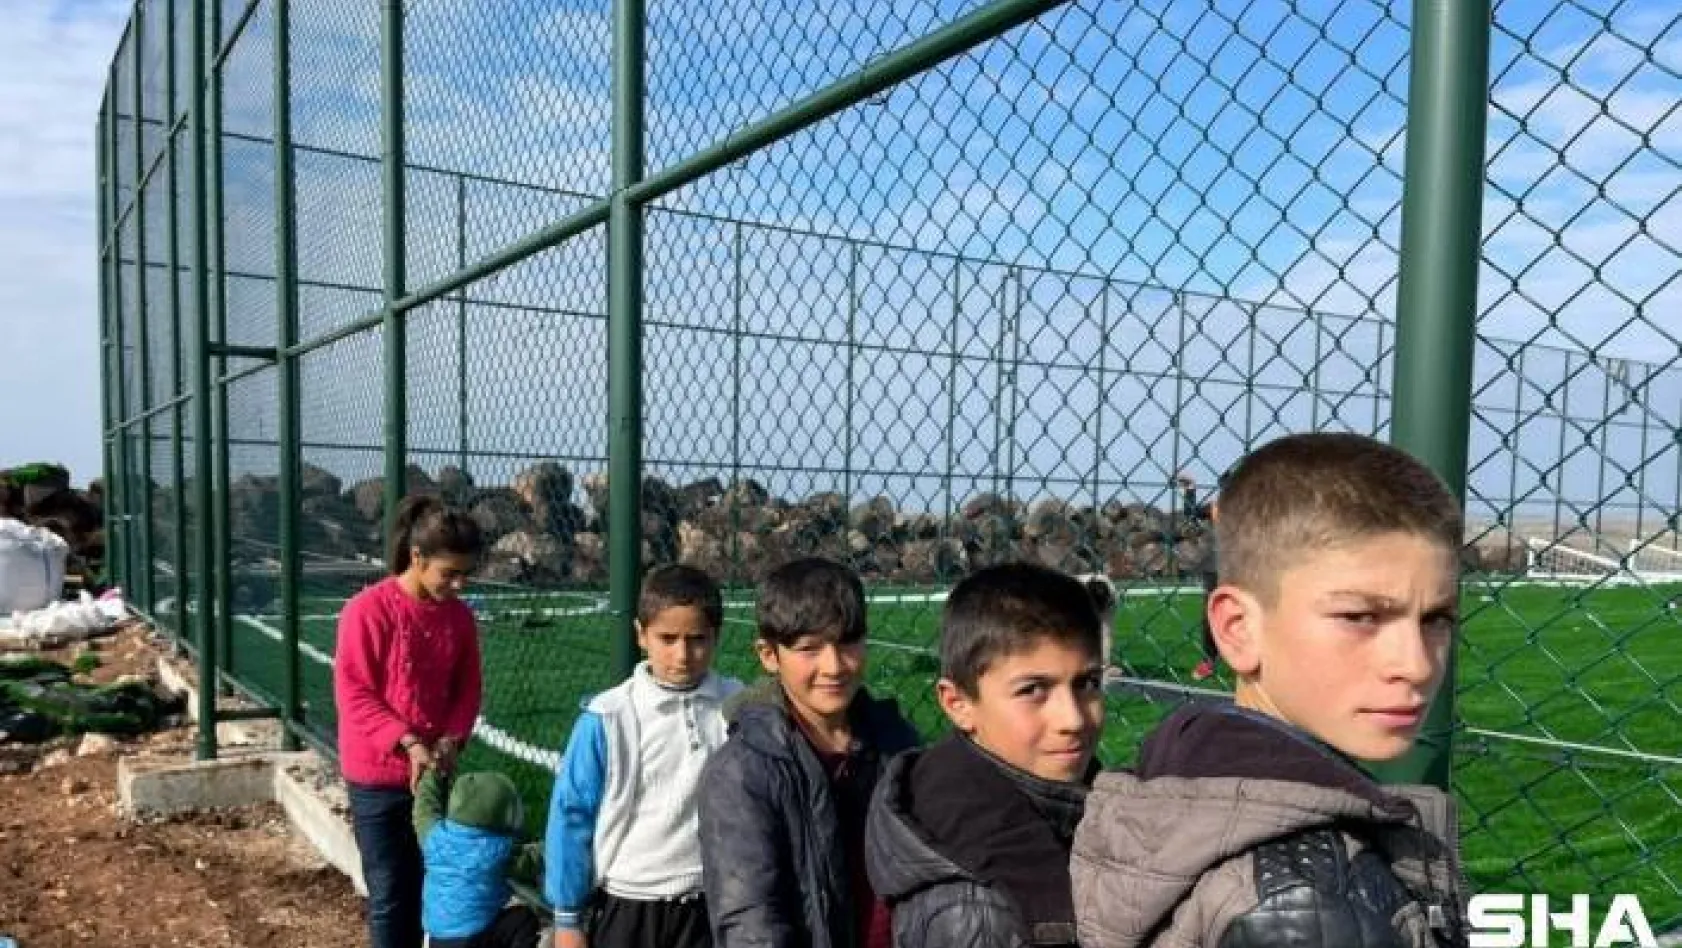 Bakan Kasapoğlu'nun Viranşehirli köylülere verdiği tenis kortu sözü gerçekleştirildi